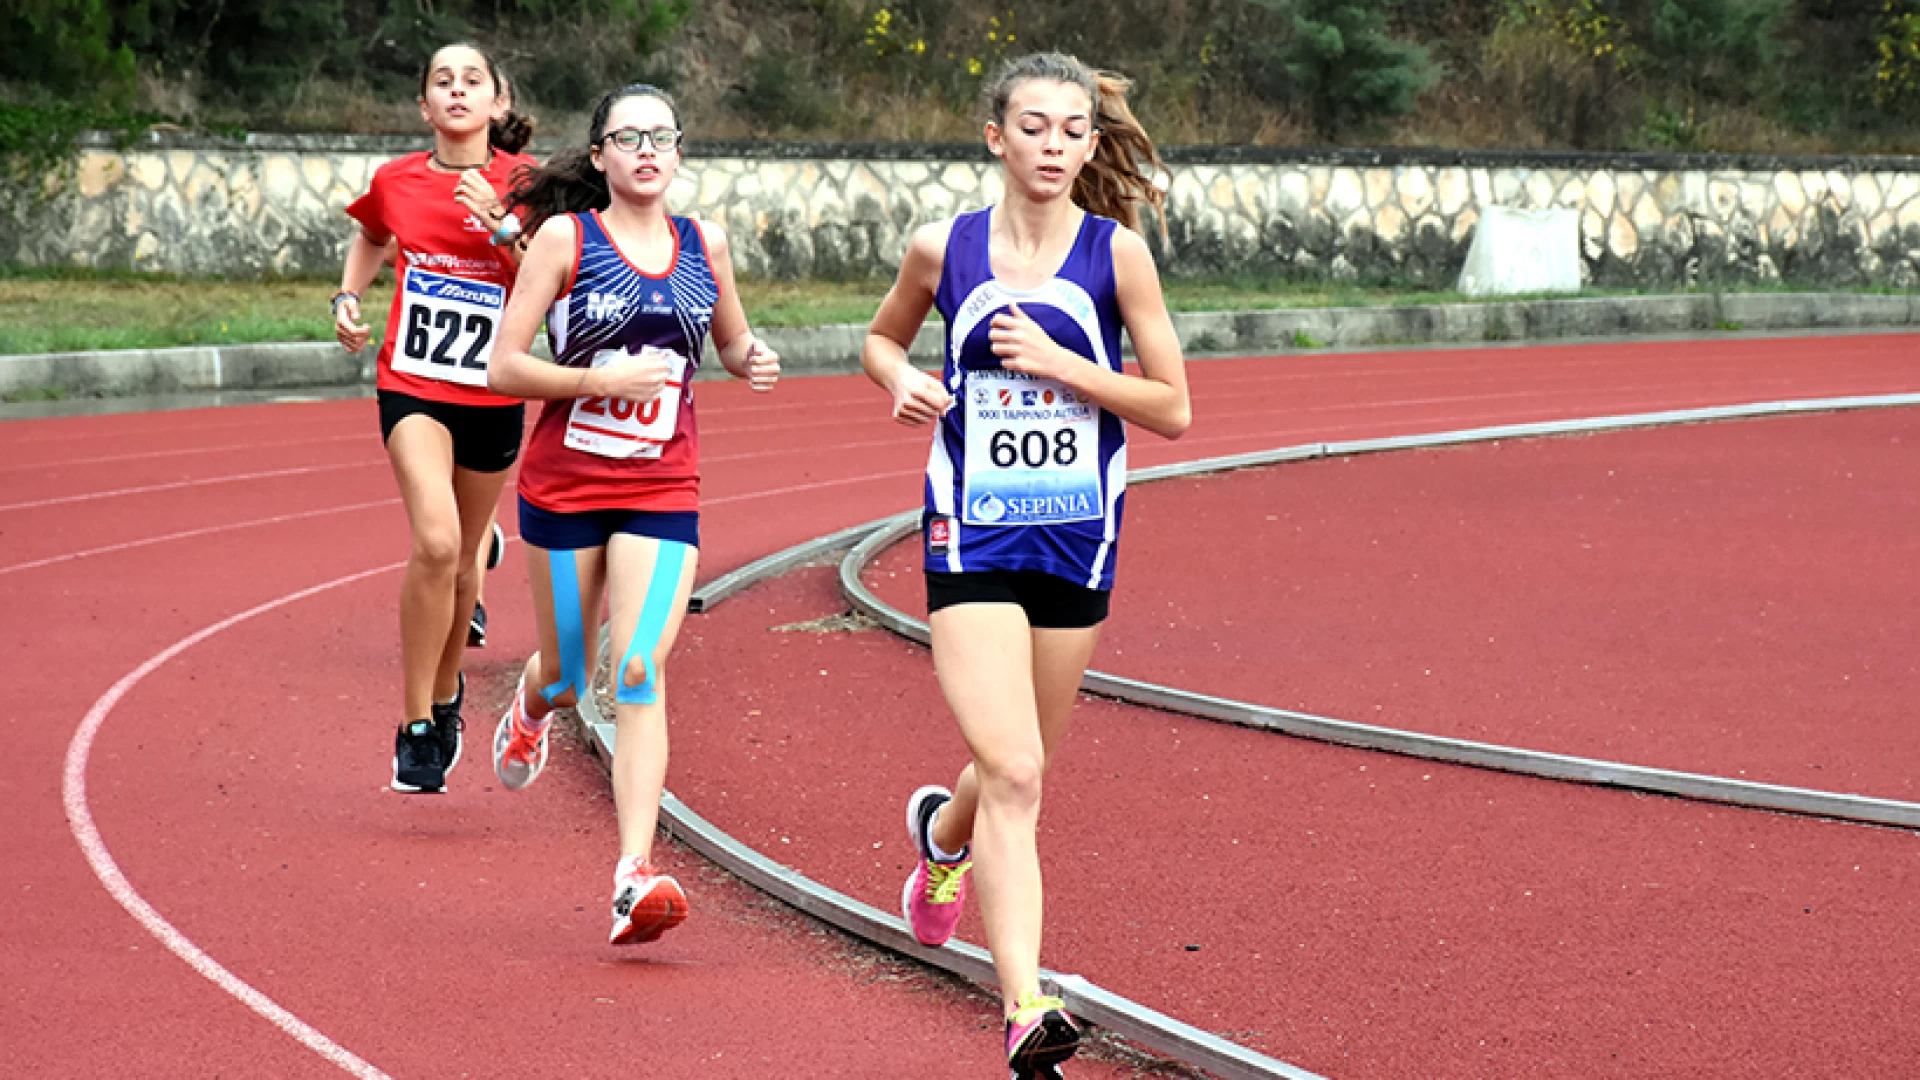 Atletica leggera: ai Campionati regionali di Campobasso Martina Meola della Runners Termoli conquista il titolo nei mille metri.